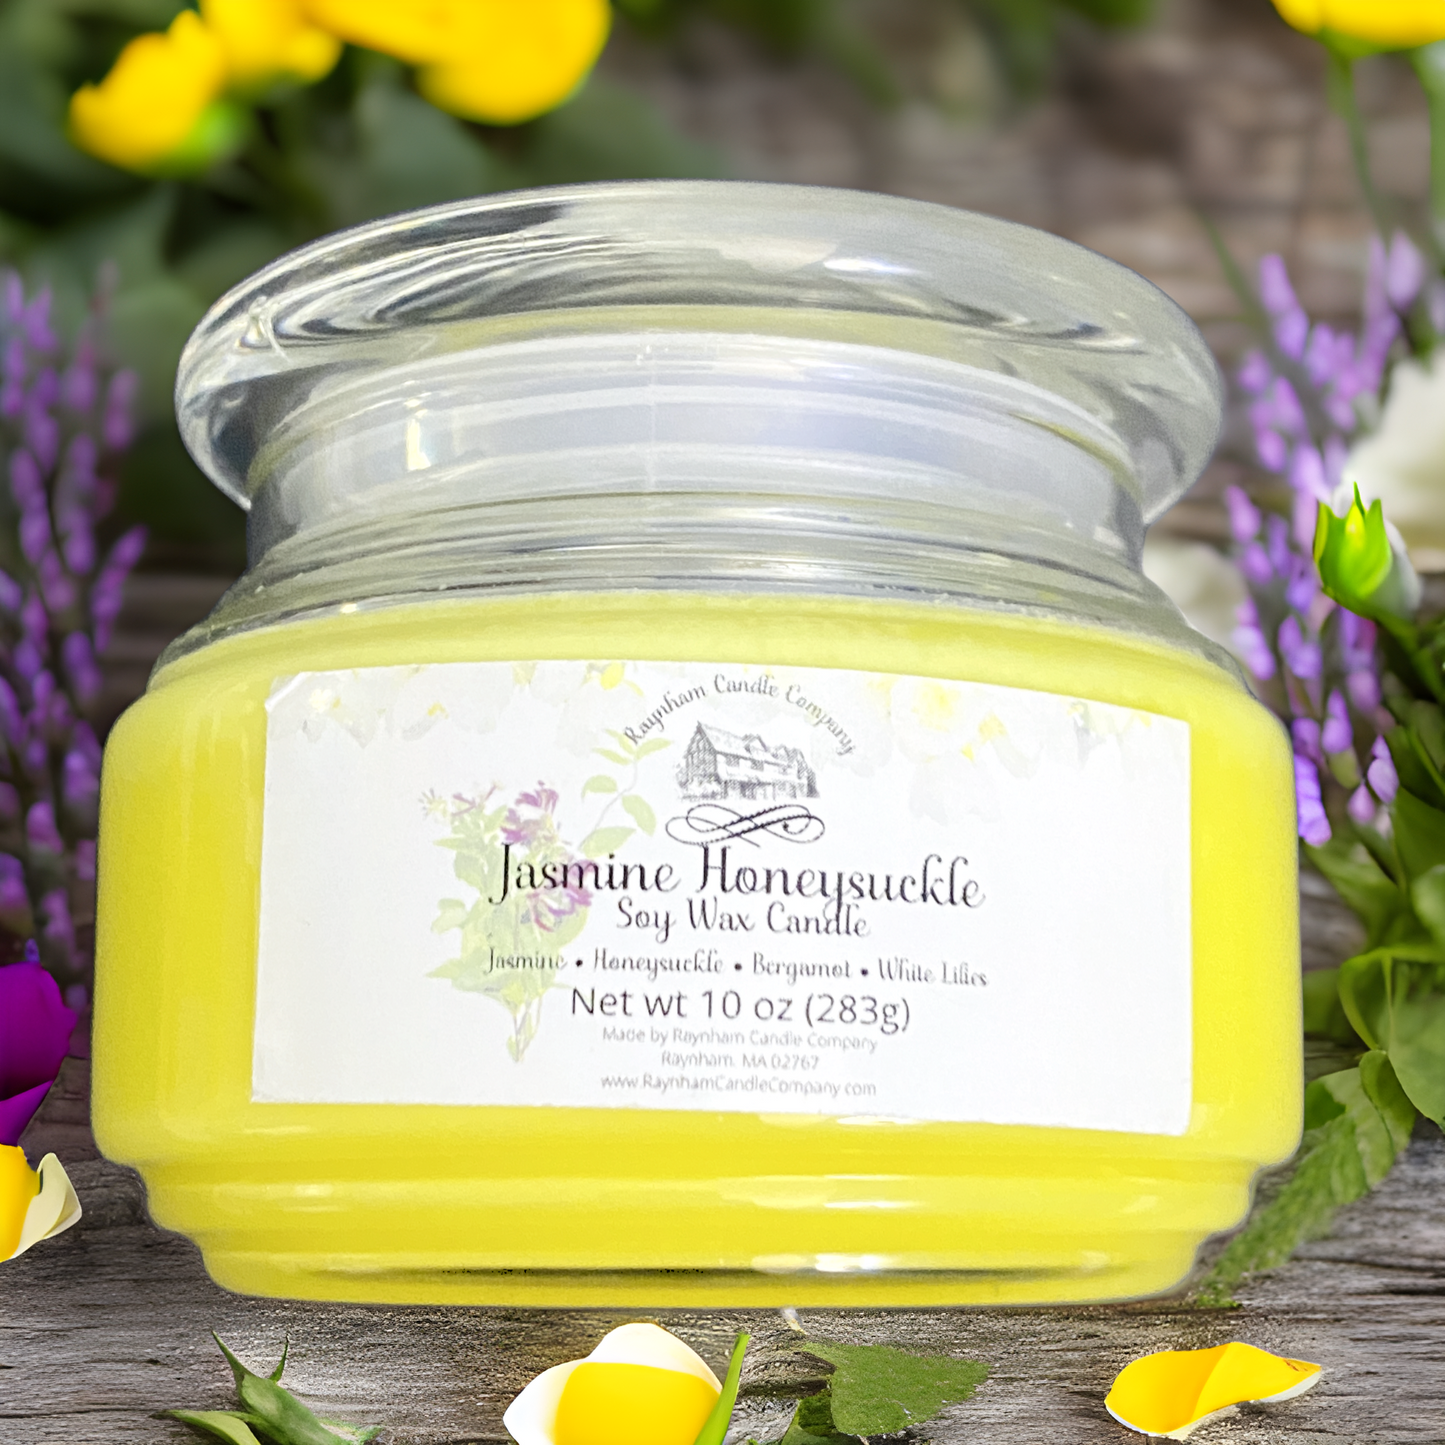 Jasmine Honeysuckle - Premium  from Raynham Candle Company  - Just $5.00! Shop now at Raynham Candle Company 